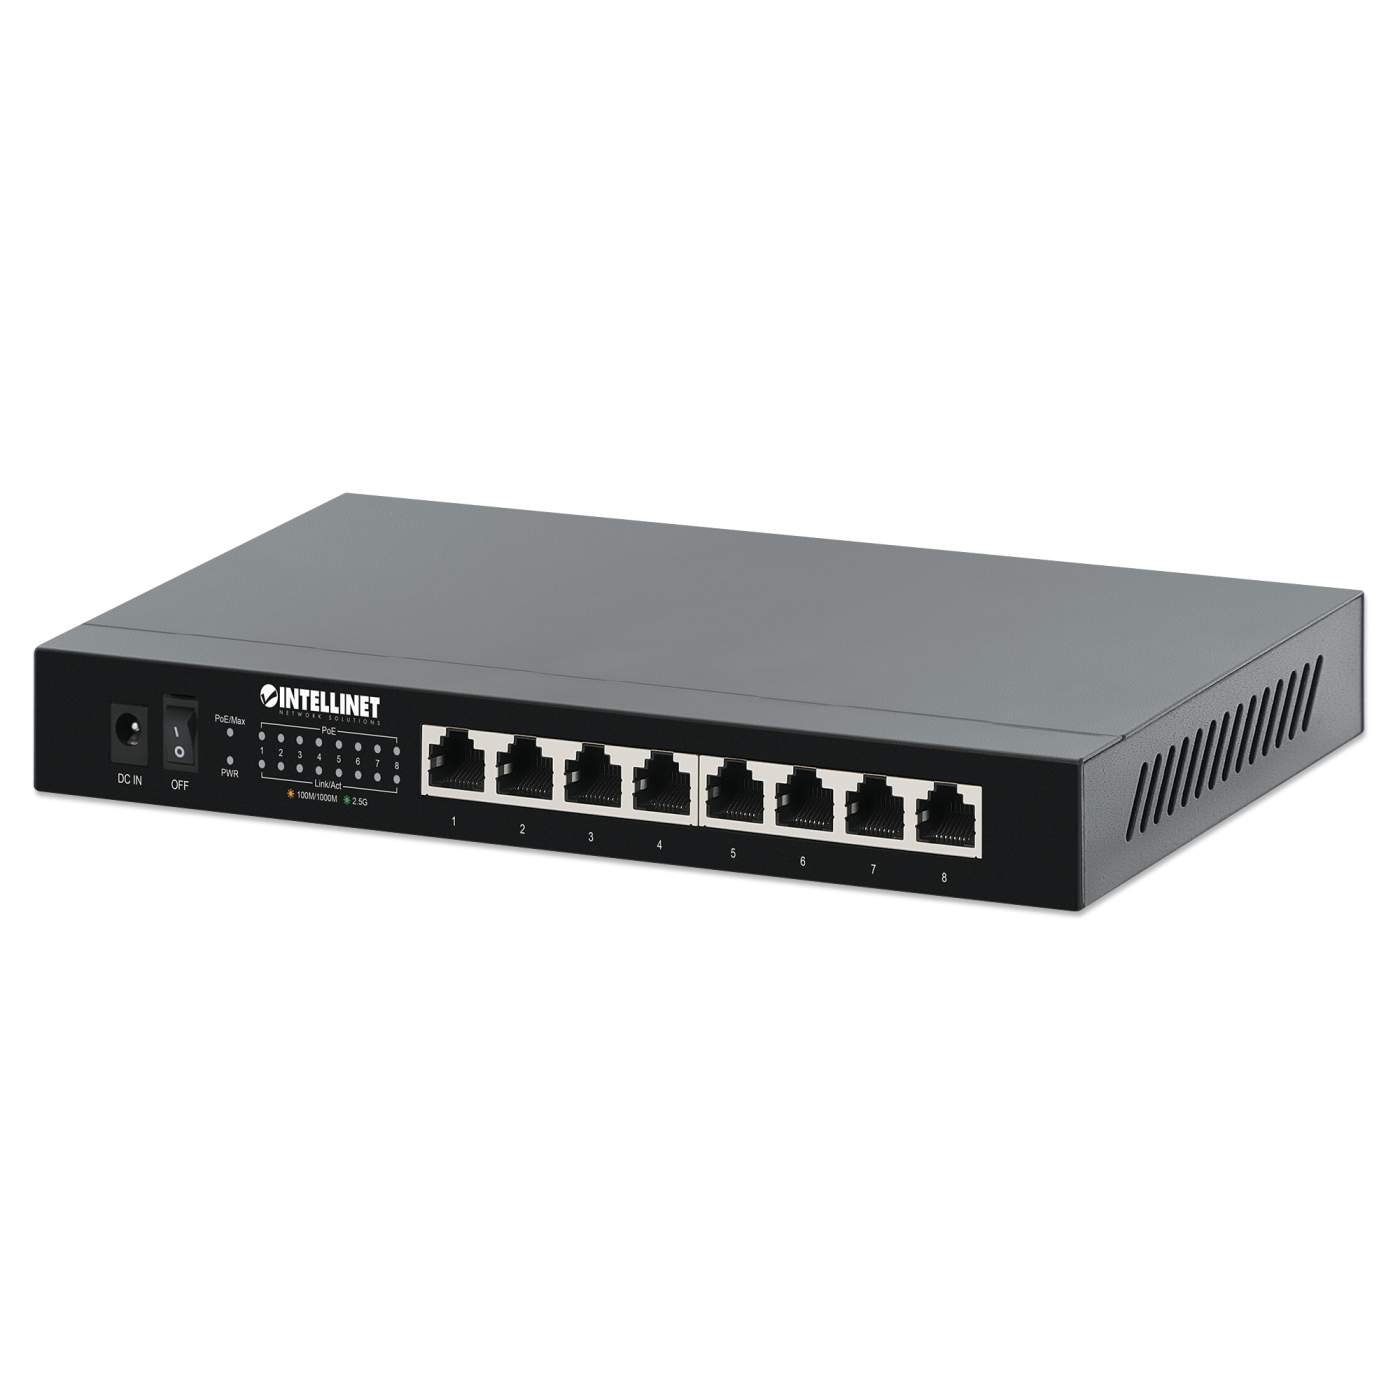 Switch TP-Link 8-Port Gigabit Ethernet